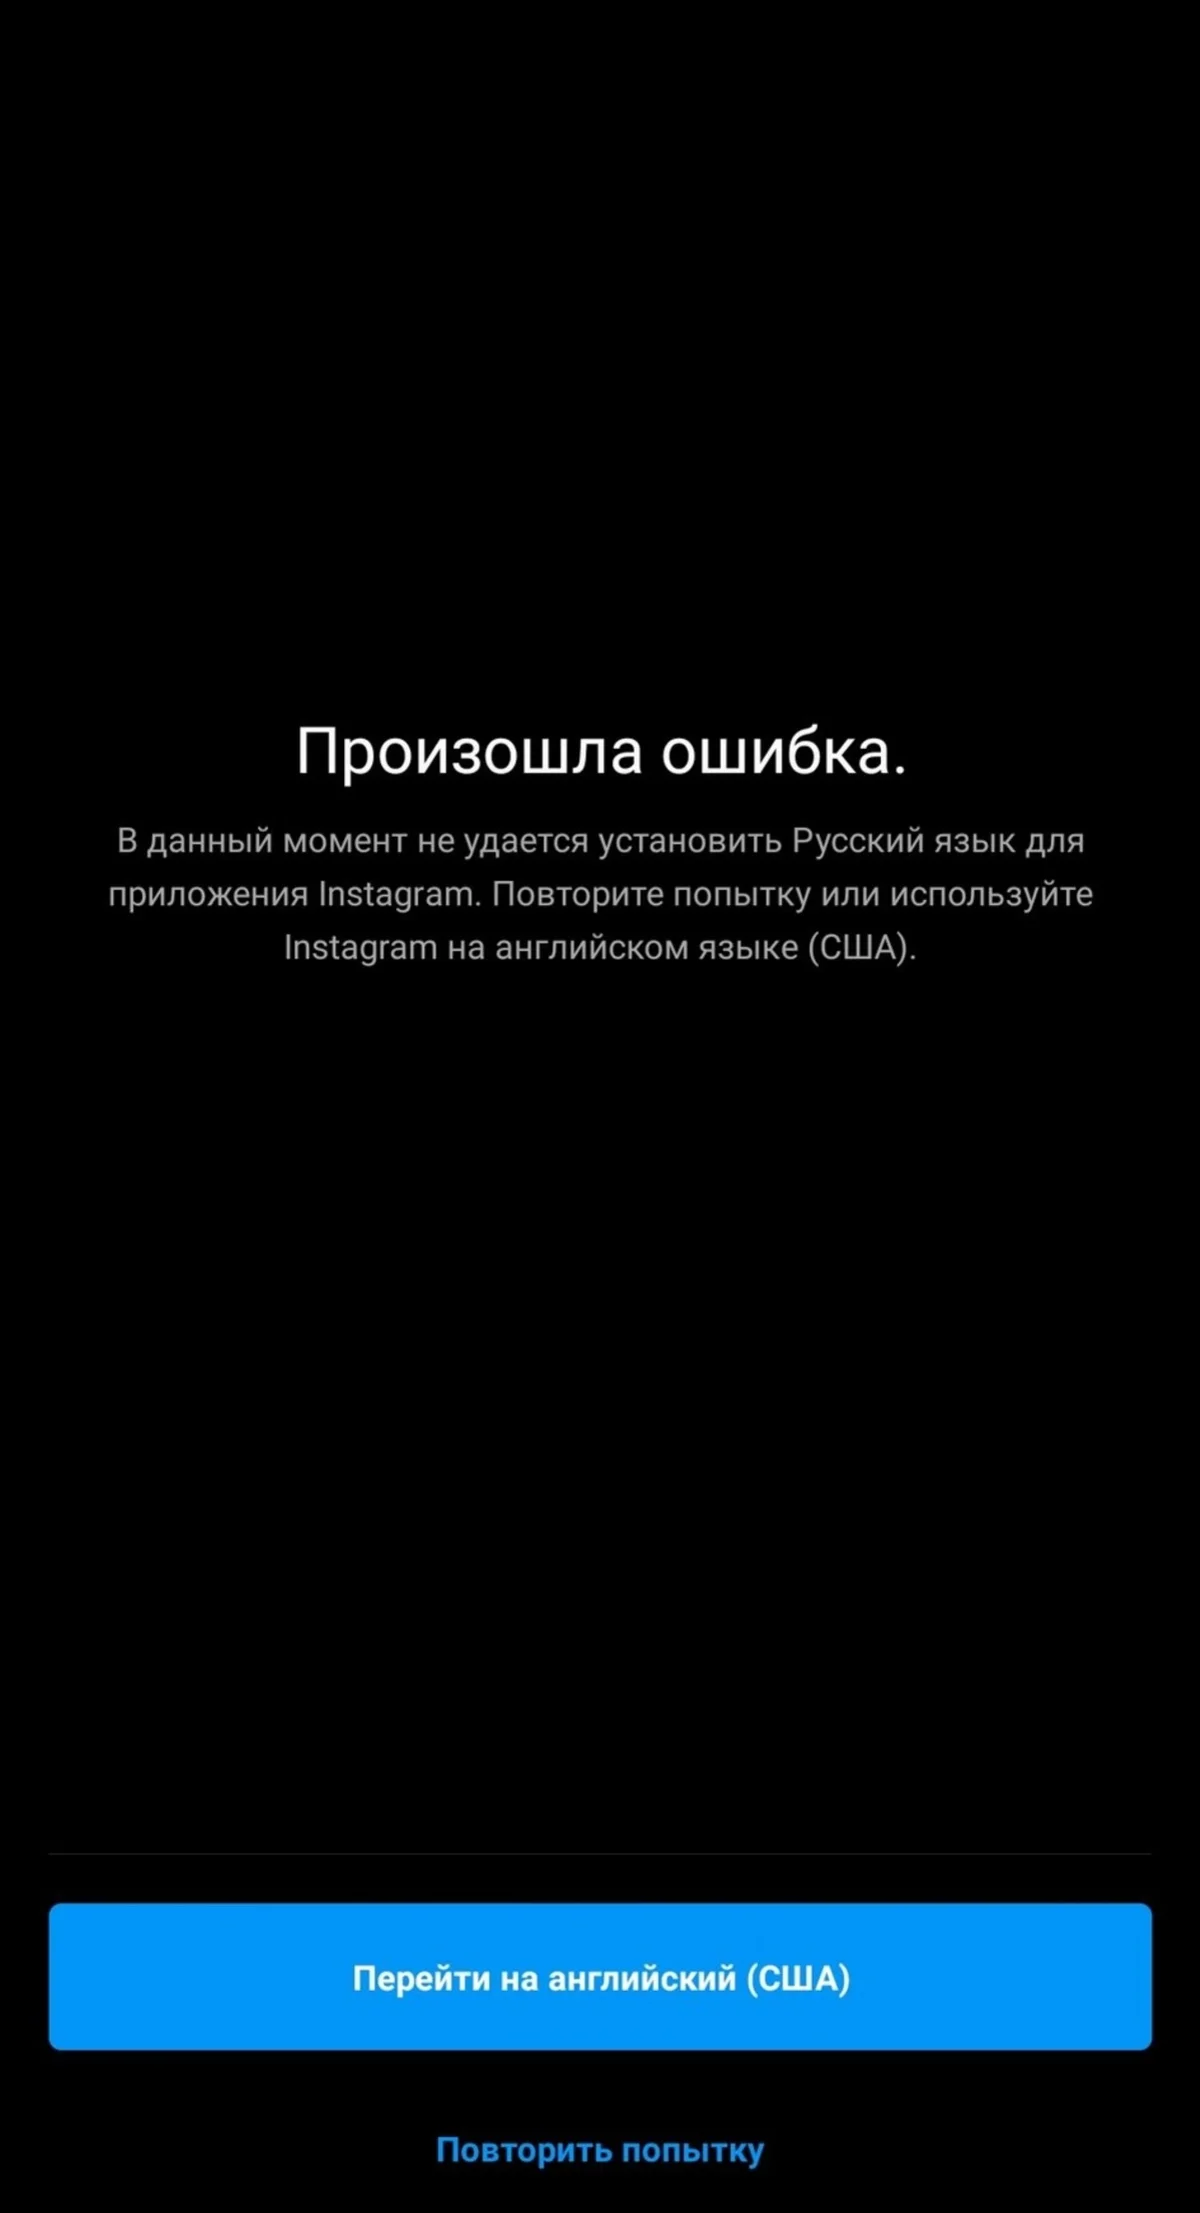 Пользователи Instagram пожаловались на сбой и неработающий русский язык в приложении - фото 2